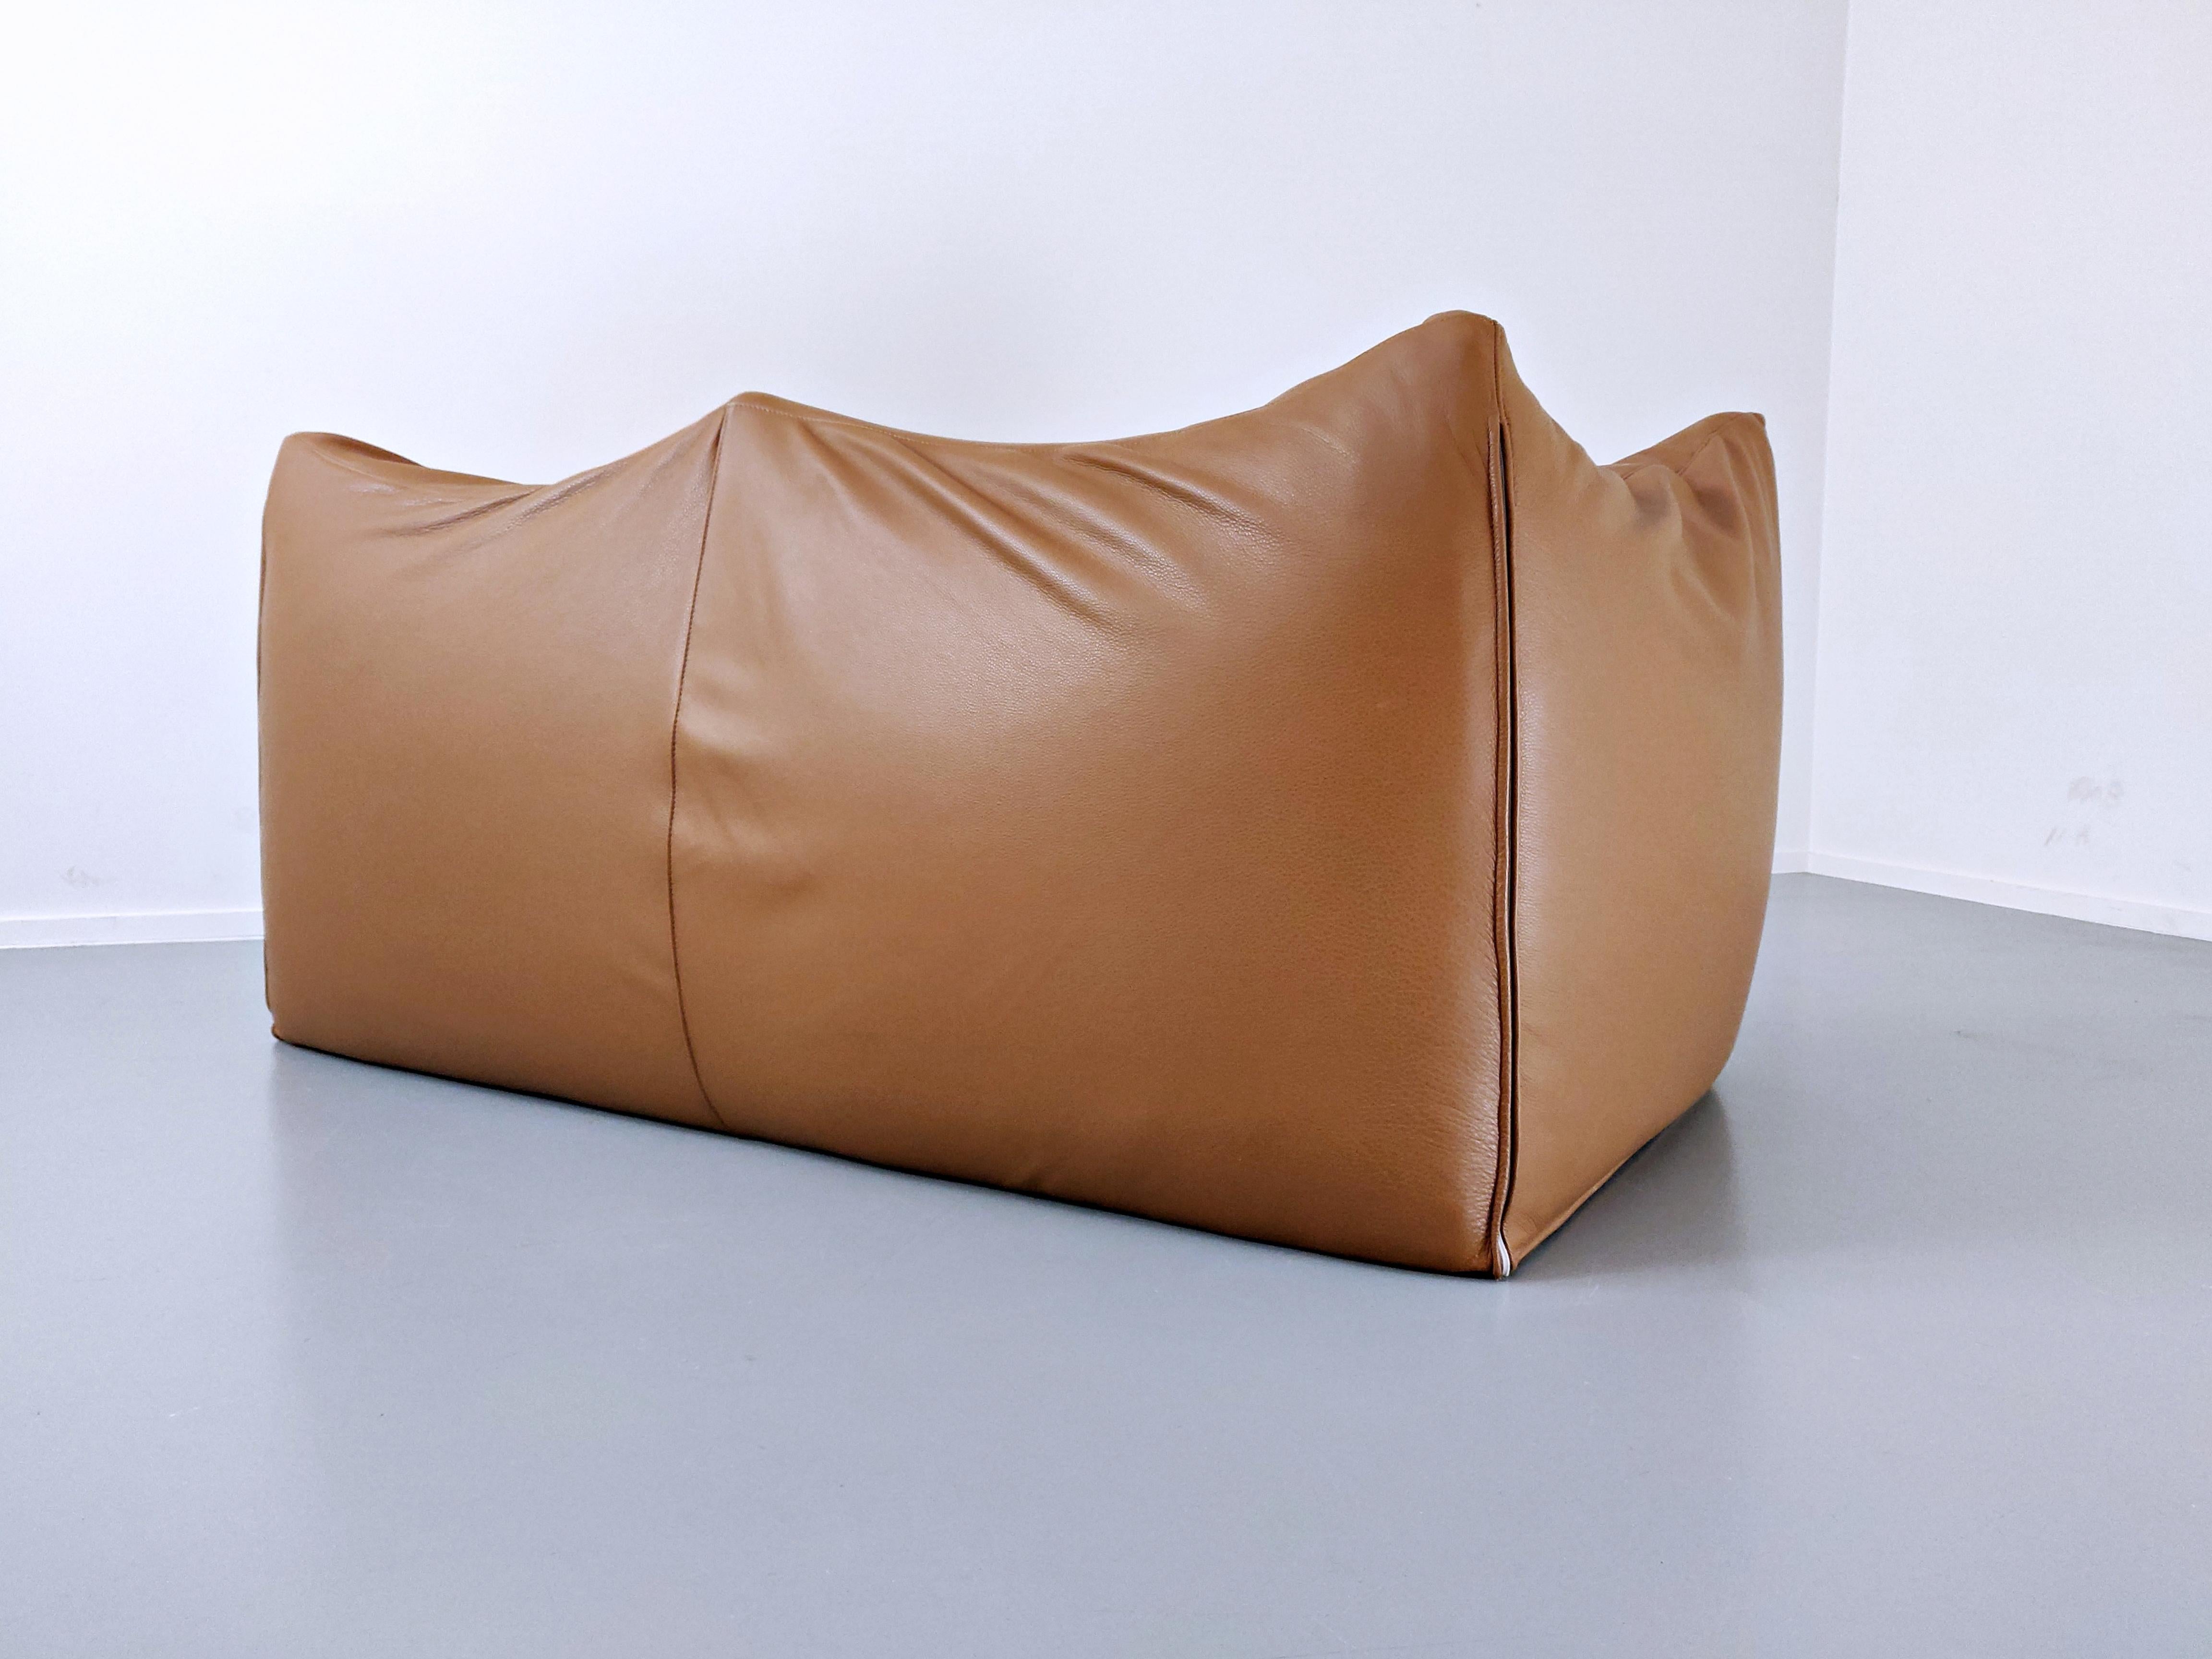 Leather Le Bambole Sofa by Mario Bellini for B&B Italia, Italy, 1970s